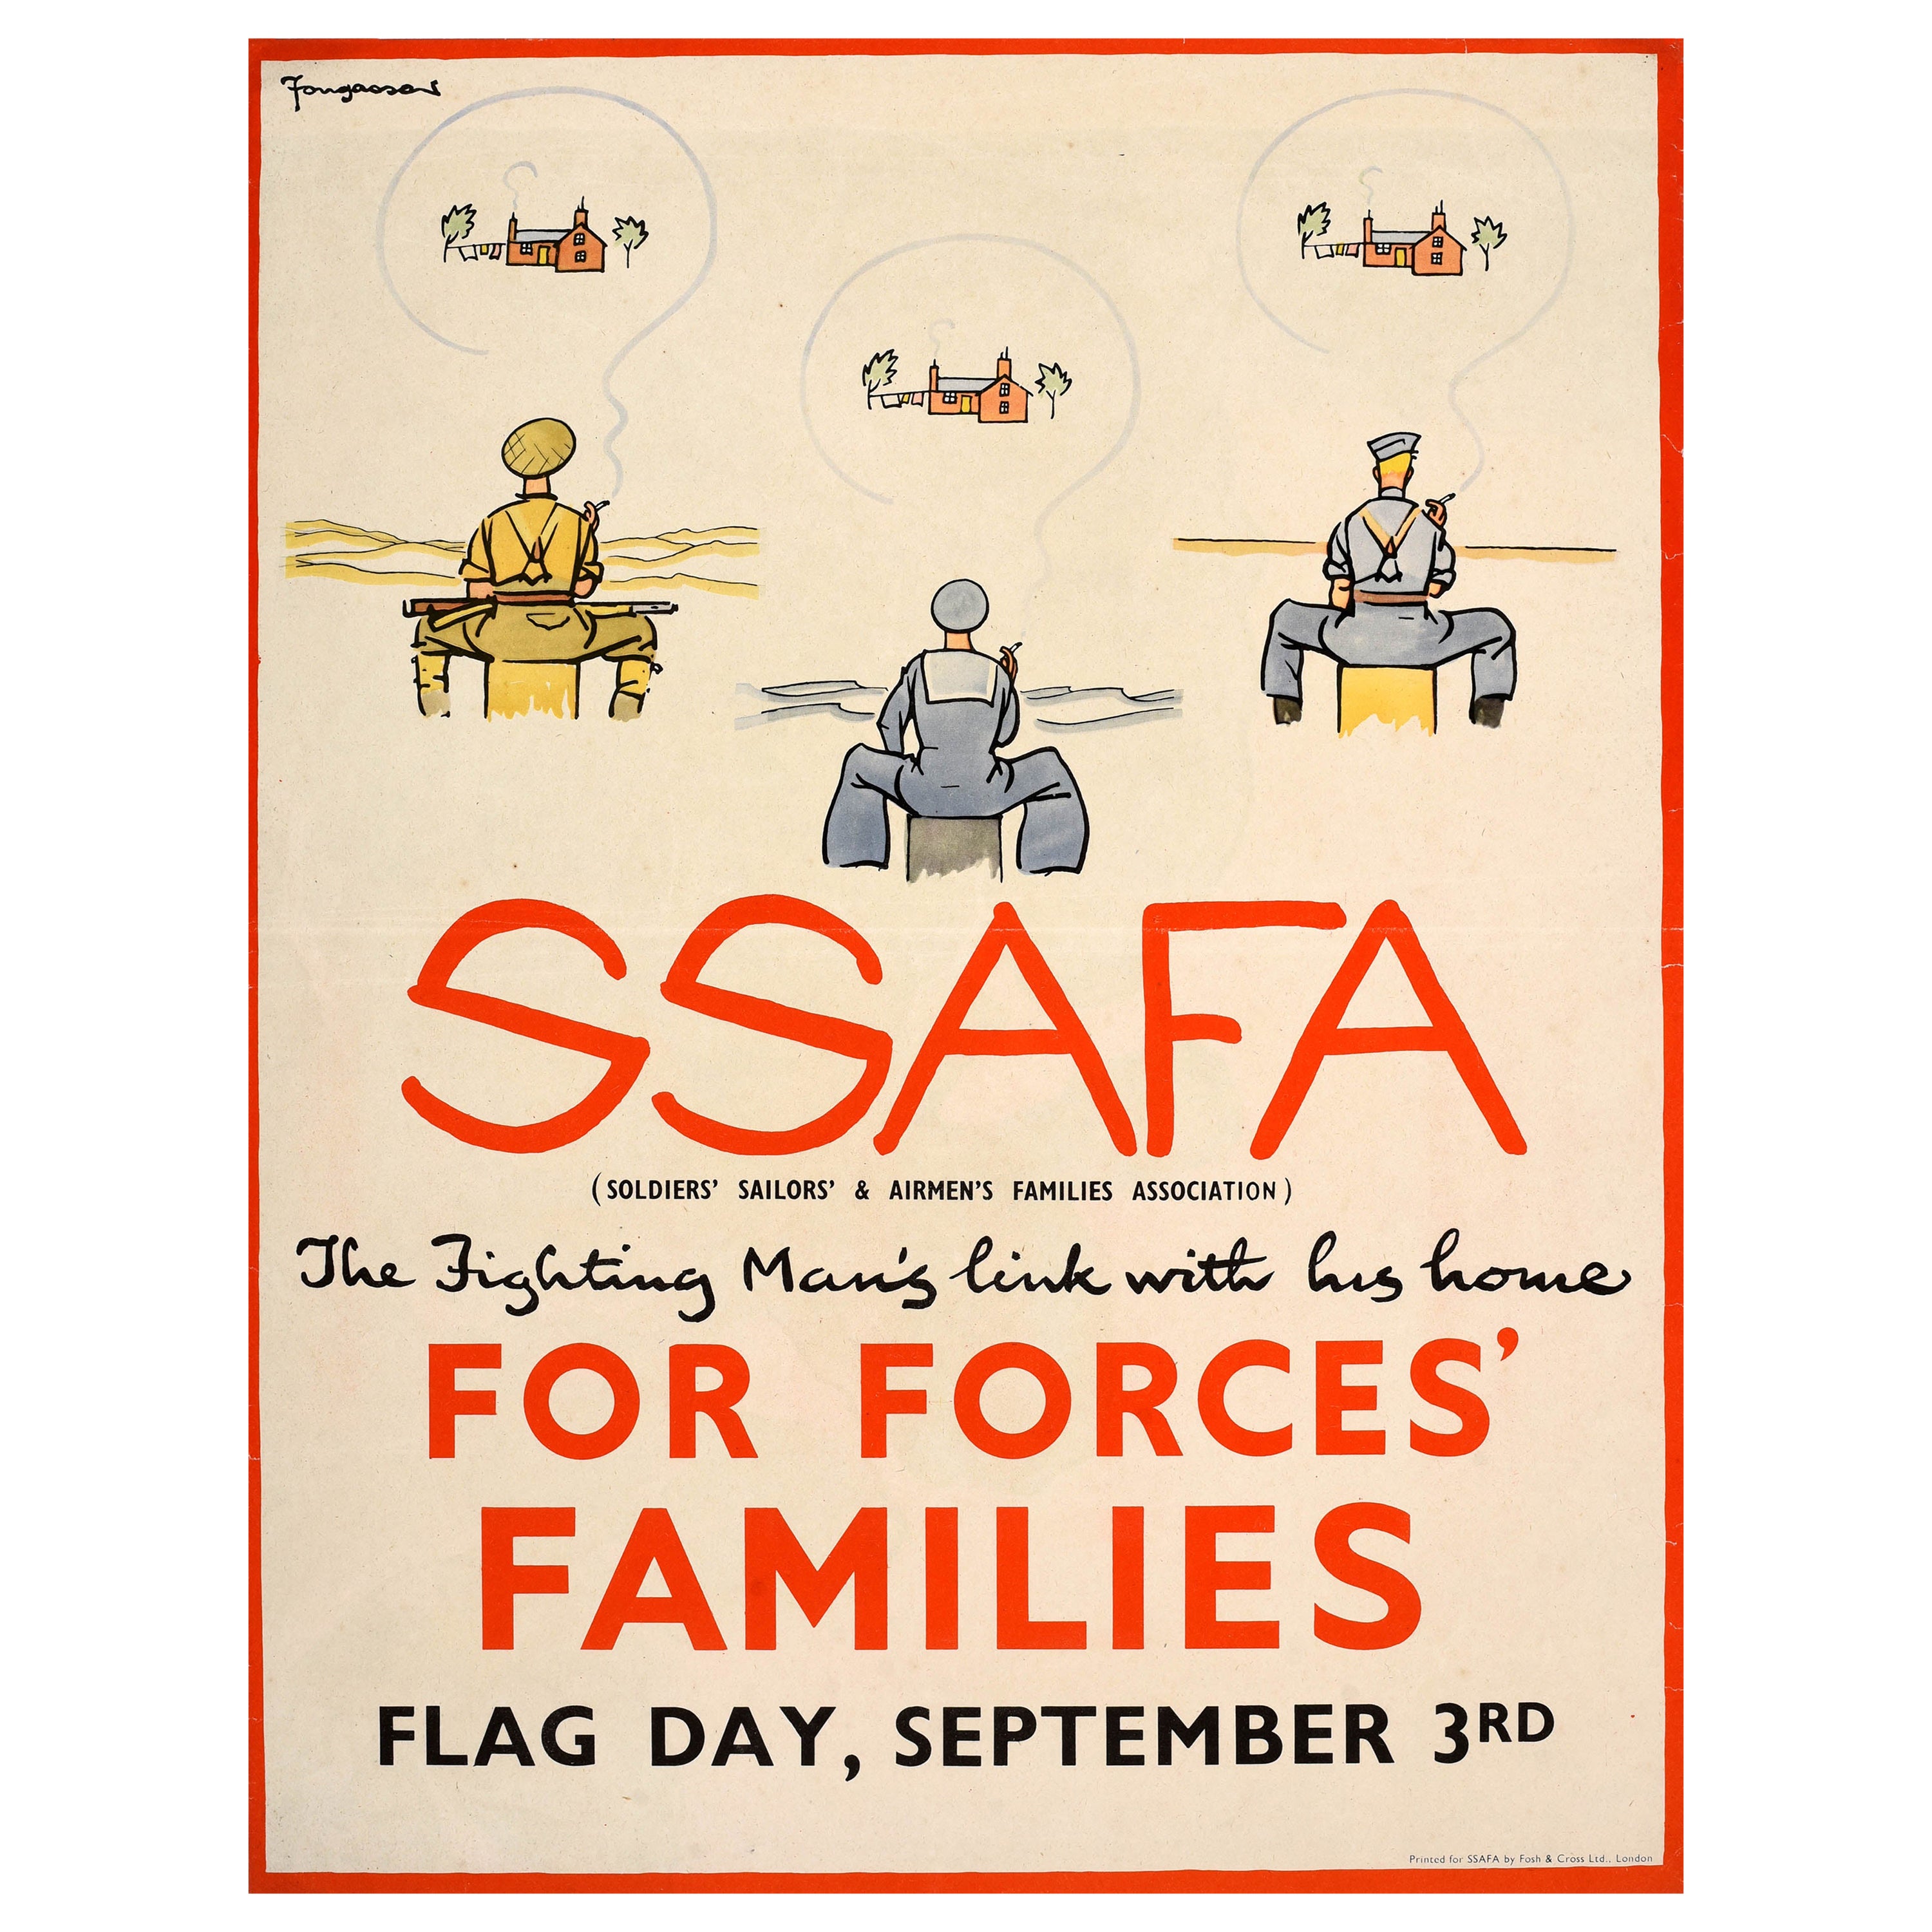 Affiche rétro originale de la Seconde Guerre mondiale, SSAFA, Soldiers, Sailors Airmen familles Association